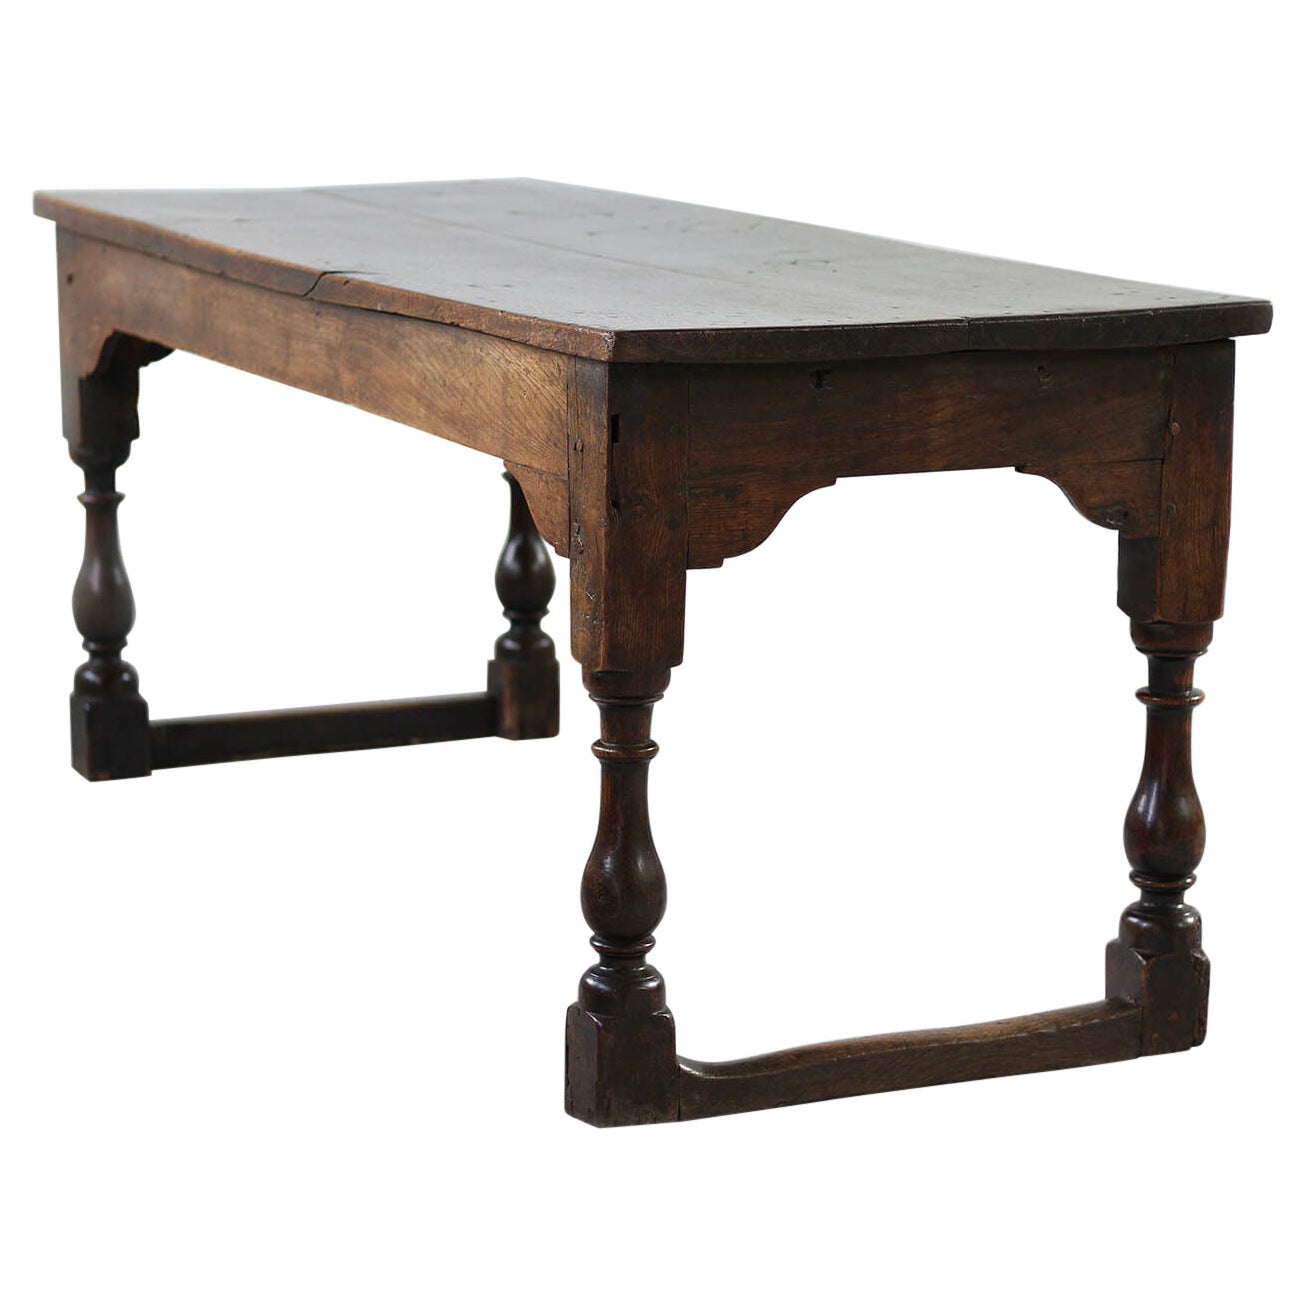 Table en chêne massif, circa 19e siècle, style rustique, table de préparation ou table à manger en vente